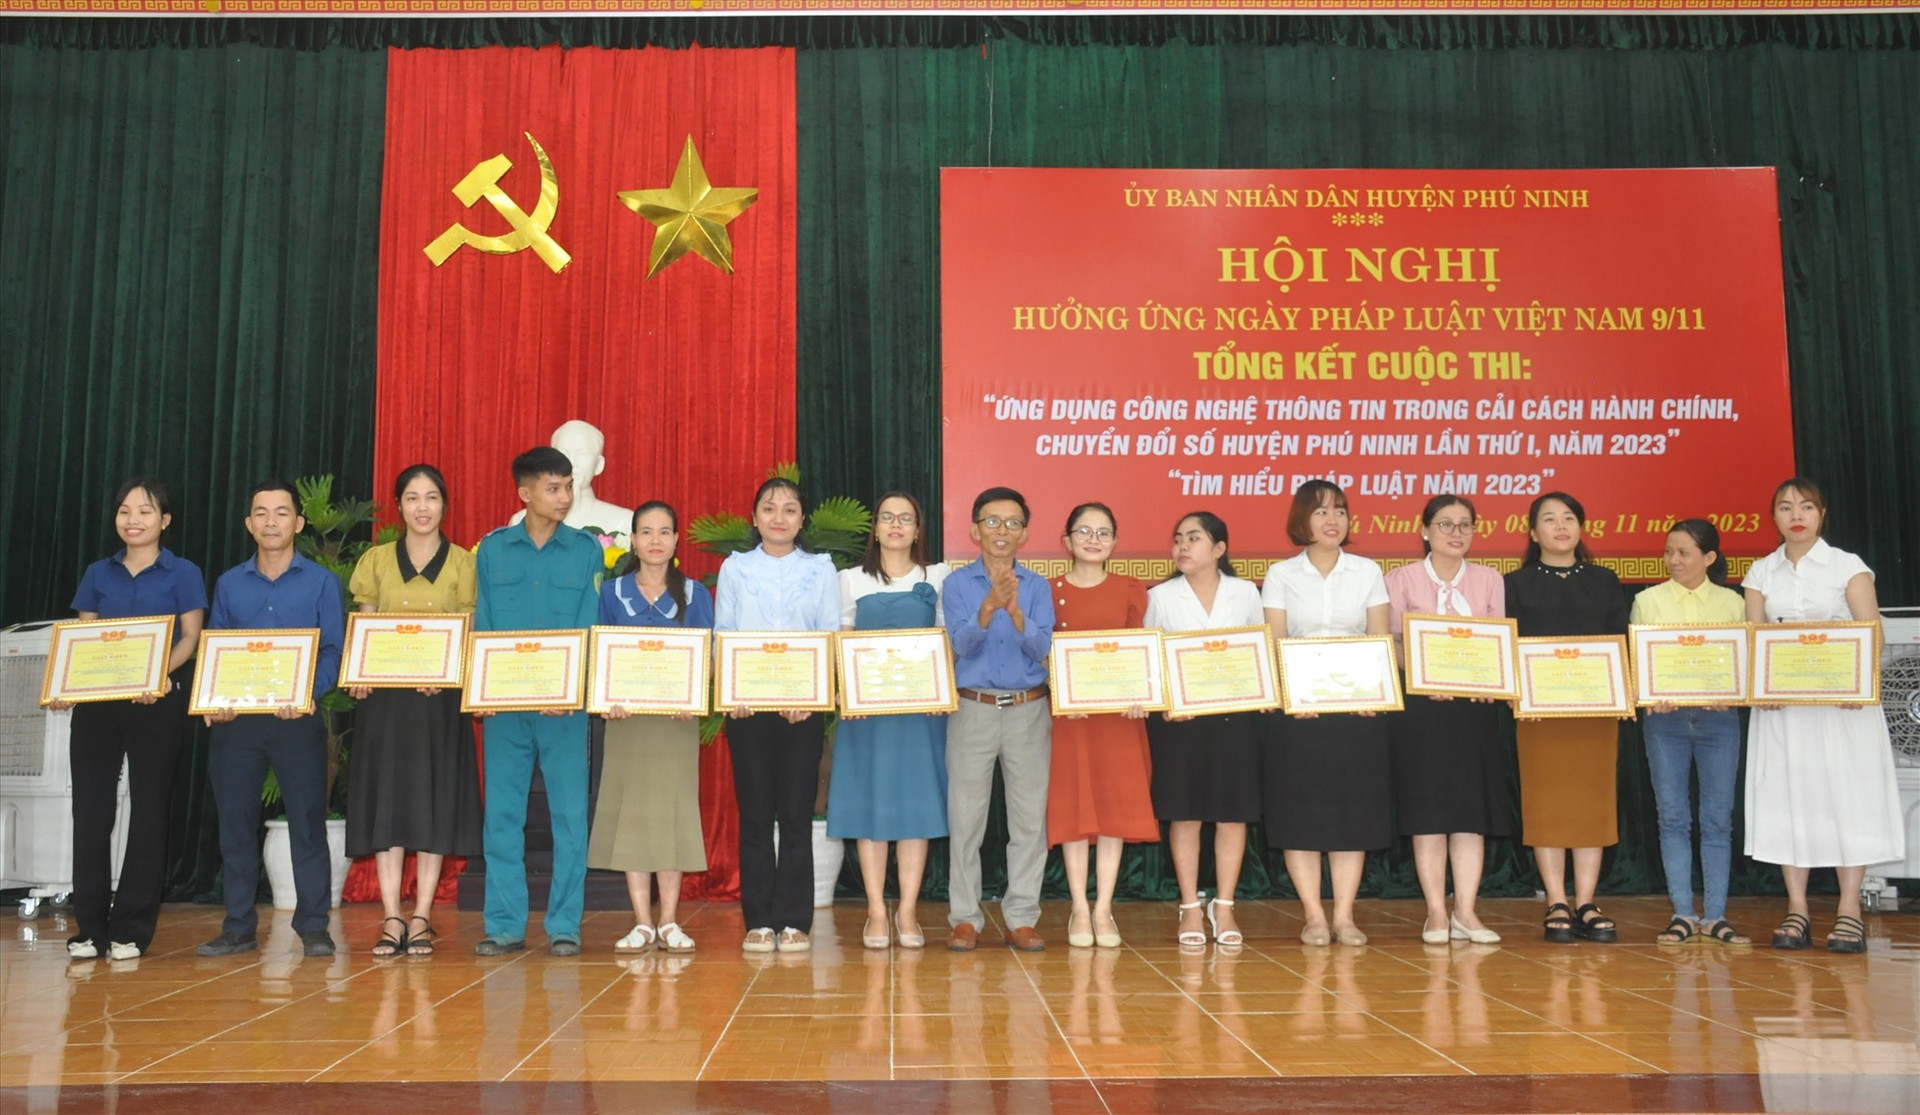 Phú Ninh trao giải cuộc thi ứng dụng công nghệ thông tin trong cải cách hành chính, chuyển đổi số huyện Phú Ninh lần thứ Ithành viên Tổ Công nghệ cộng đồng thôn/khối phố ở phần thi “Kiến thức số“.